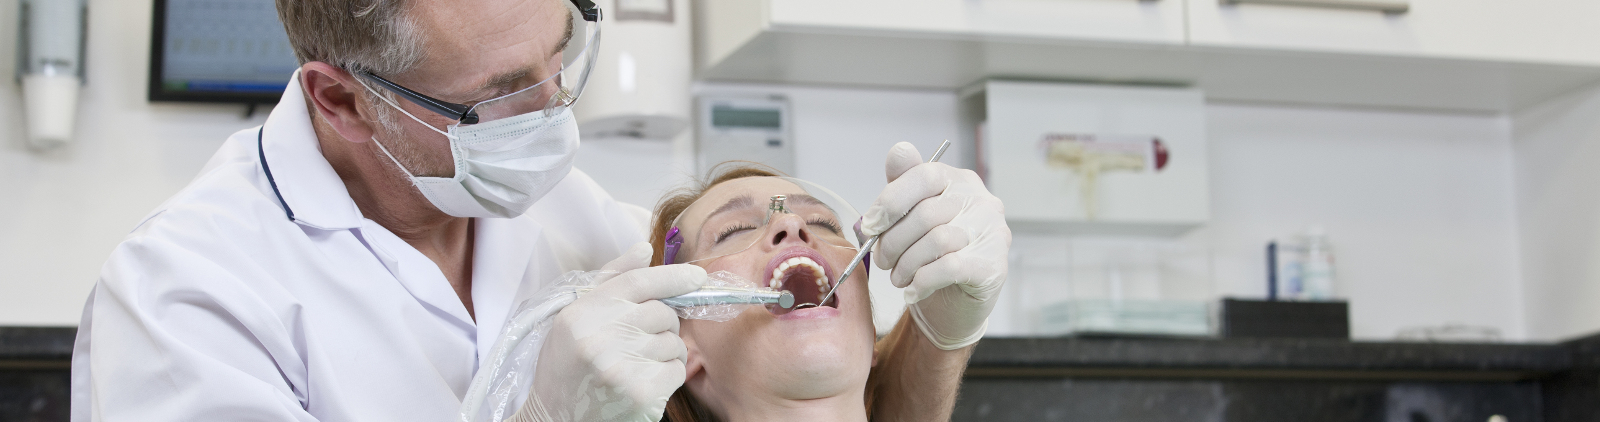 Une femme en soin chez le dentiste bénéficiant du tiers payant intégral avec la réforme 100% santé